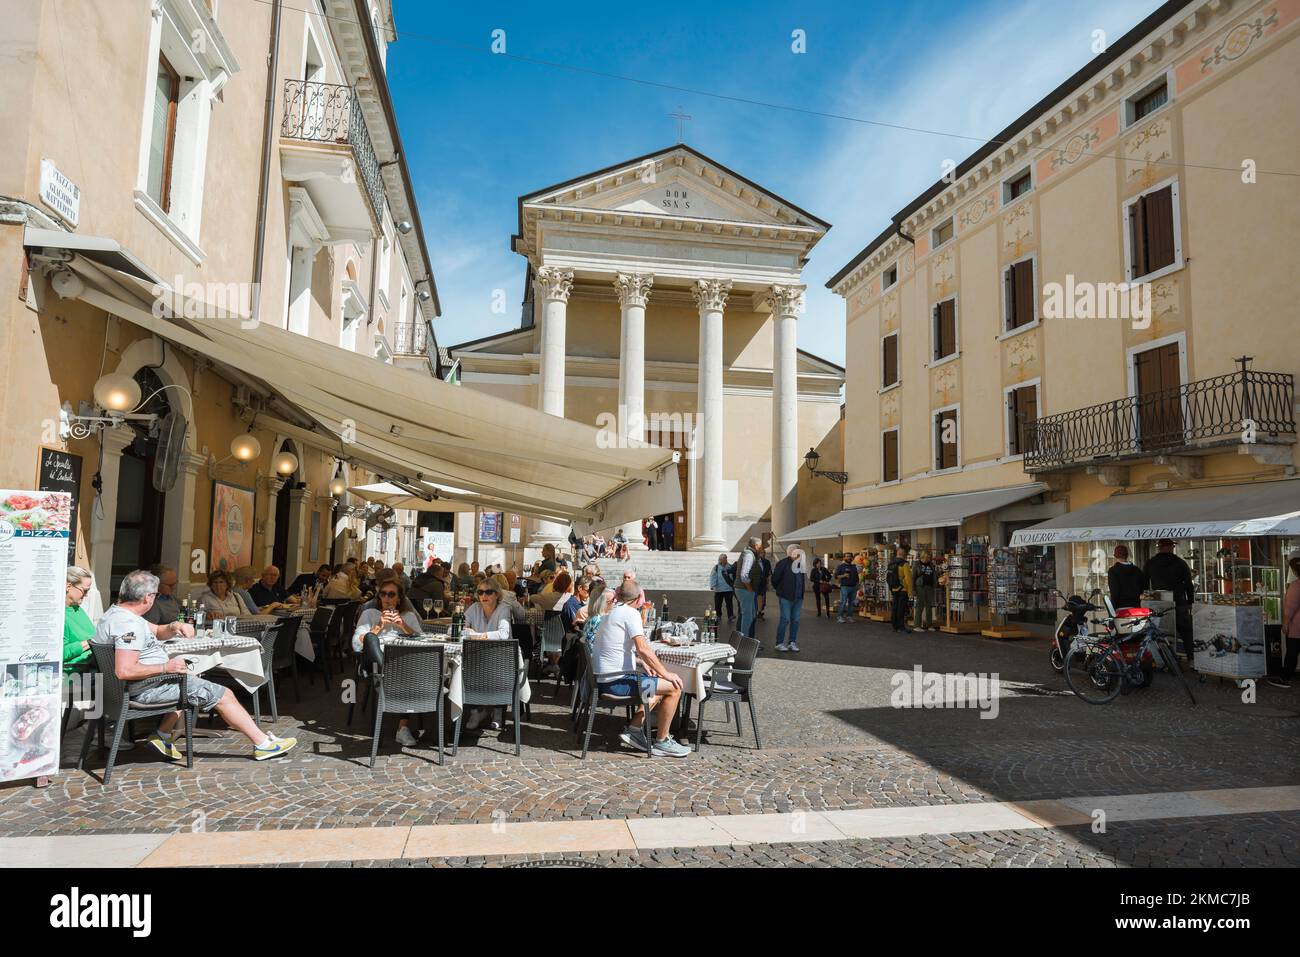 Ciudad de Bardolino Lago Garda, vista en verano de personas relajándose en mesas de café en Via San Martino en el centro histórico de la ciudad de Bardolino, Italia Foto de stock